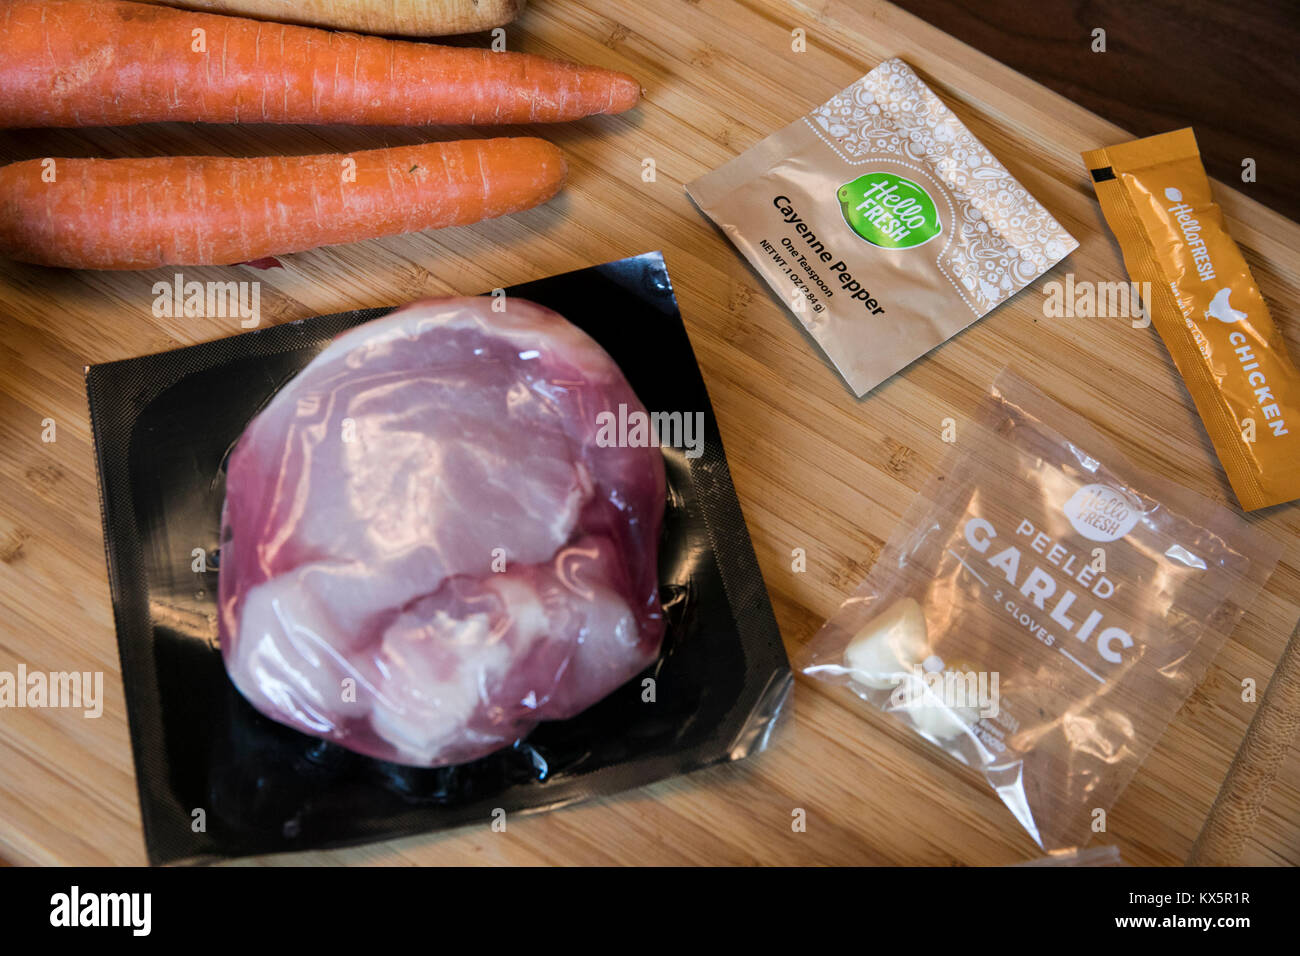 Il contenuto di un pasto HelloFresh kit di consegna come si vede il 3 gennaio 2018. Foto Stock